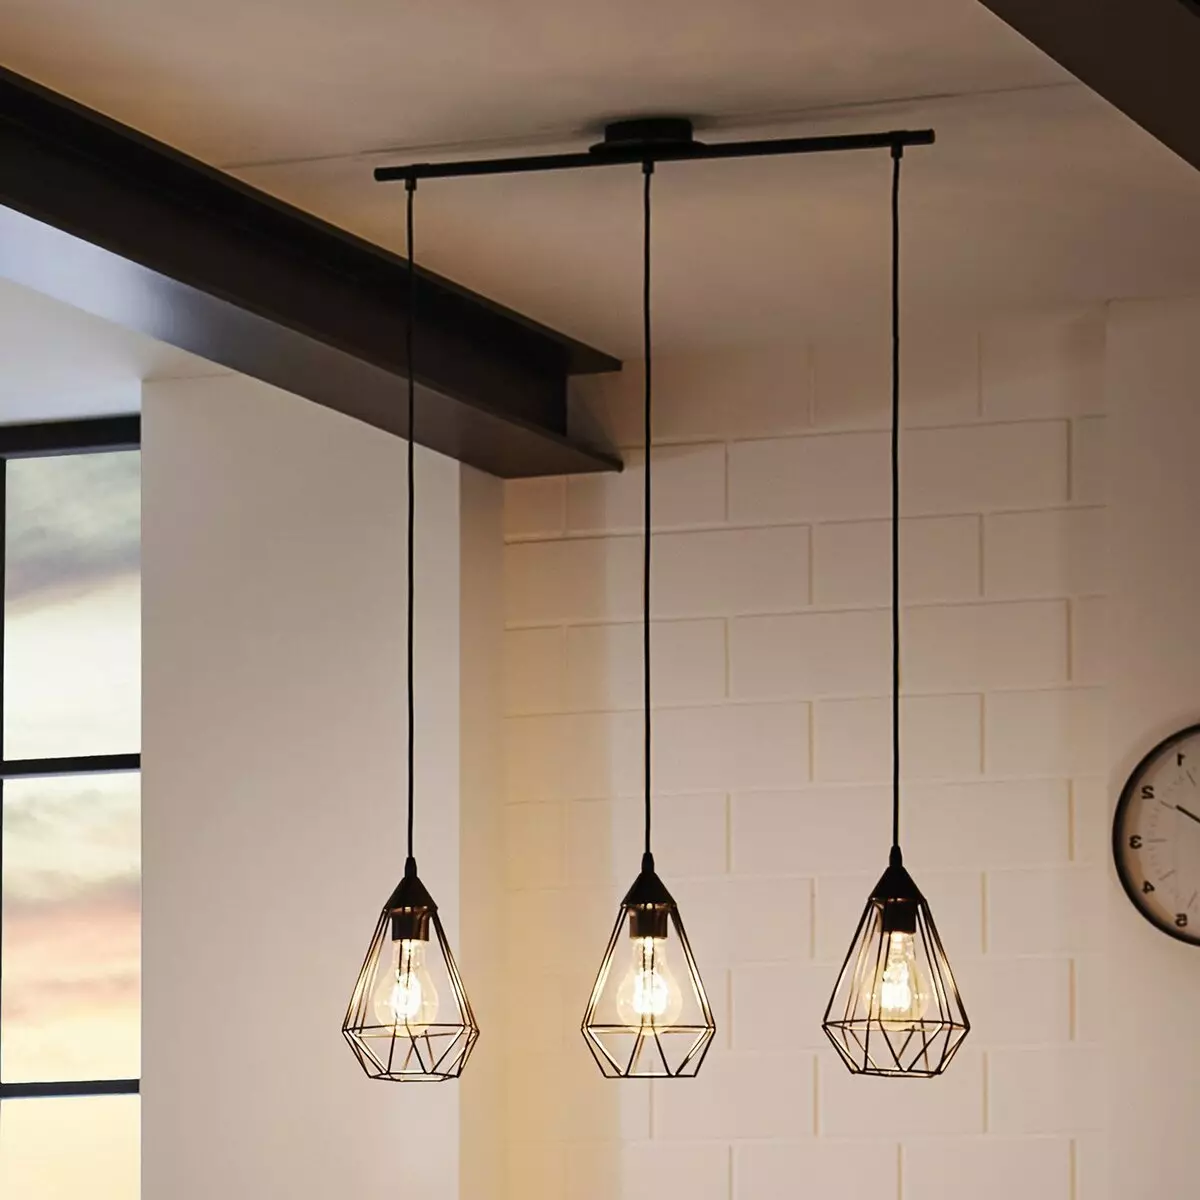 لامپ های آشپزخانه (74 عکس): آشپزخانه Sconce و لامپ های سنسور دیوار نصب شده، سربار و چراغ های پیگیری و سقف، گزینه های دیگر 21003_28